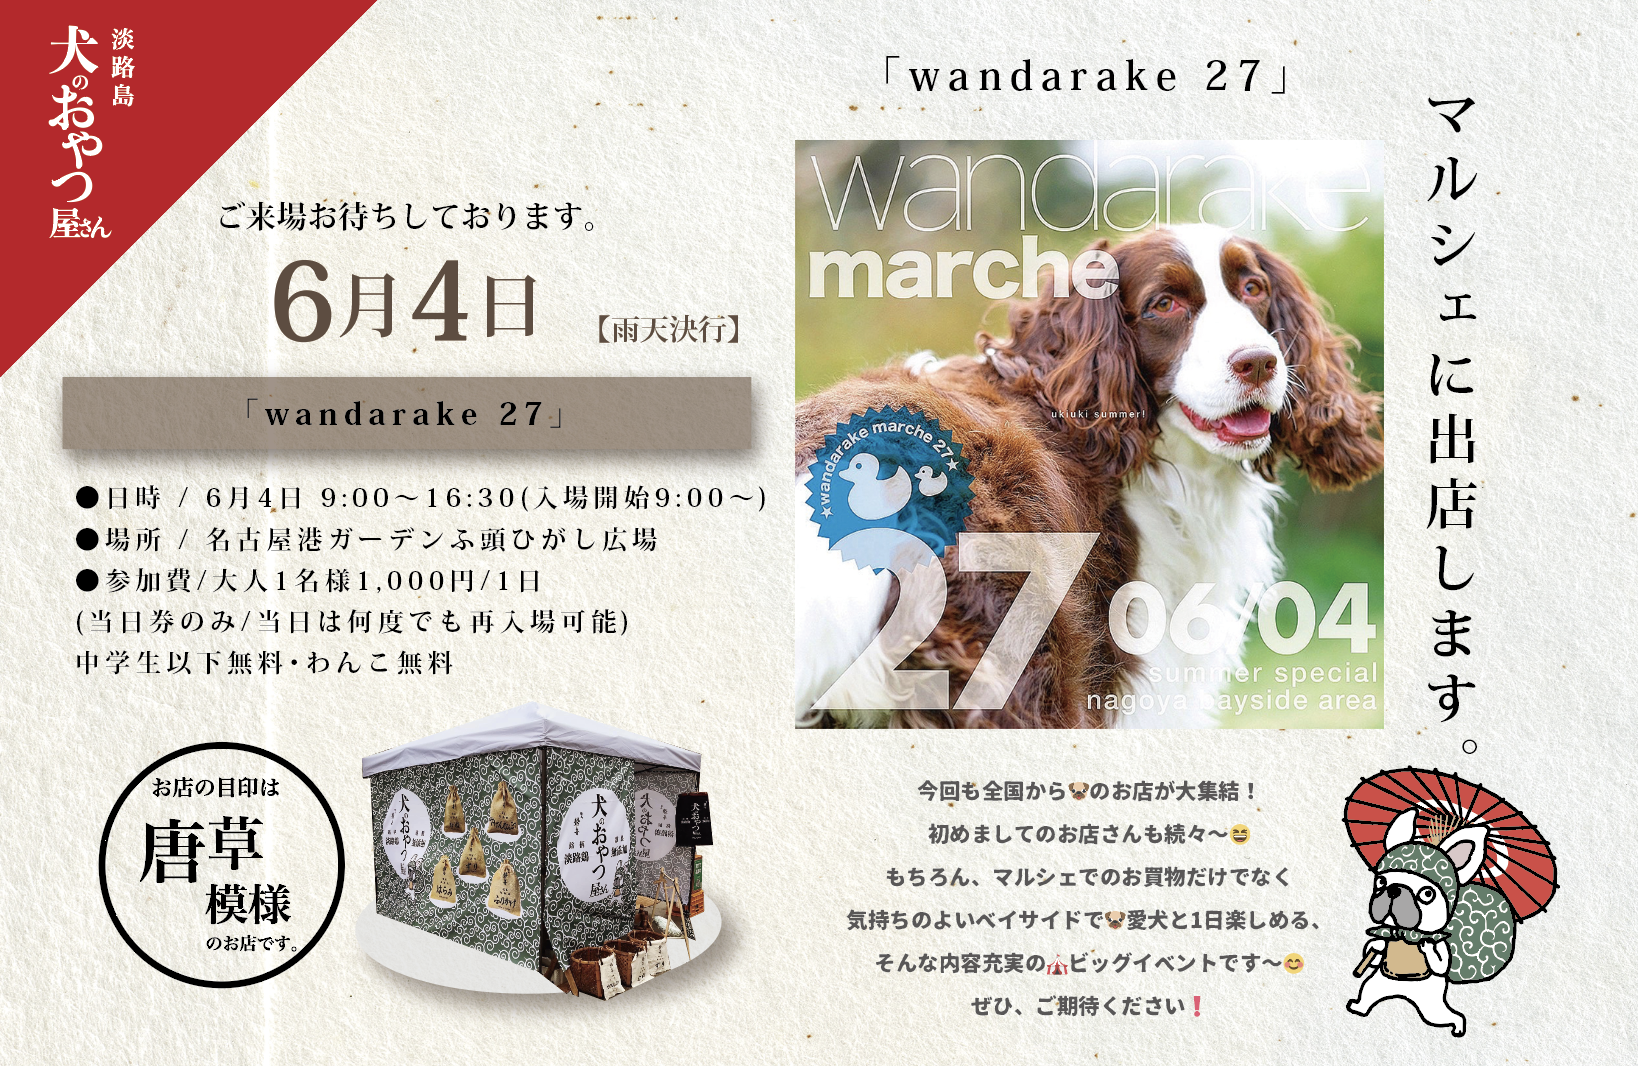 6月4日 @名古屋 「wandarake 27」に出店します。